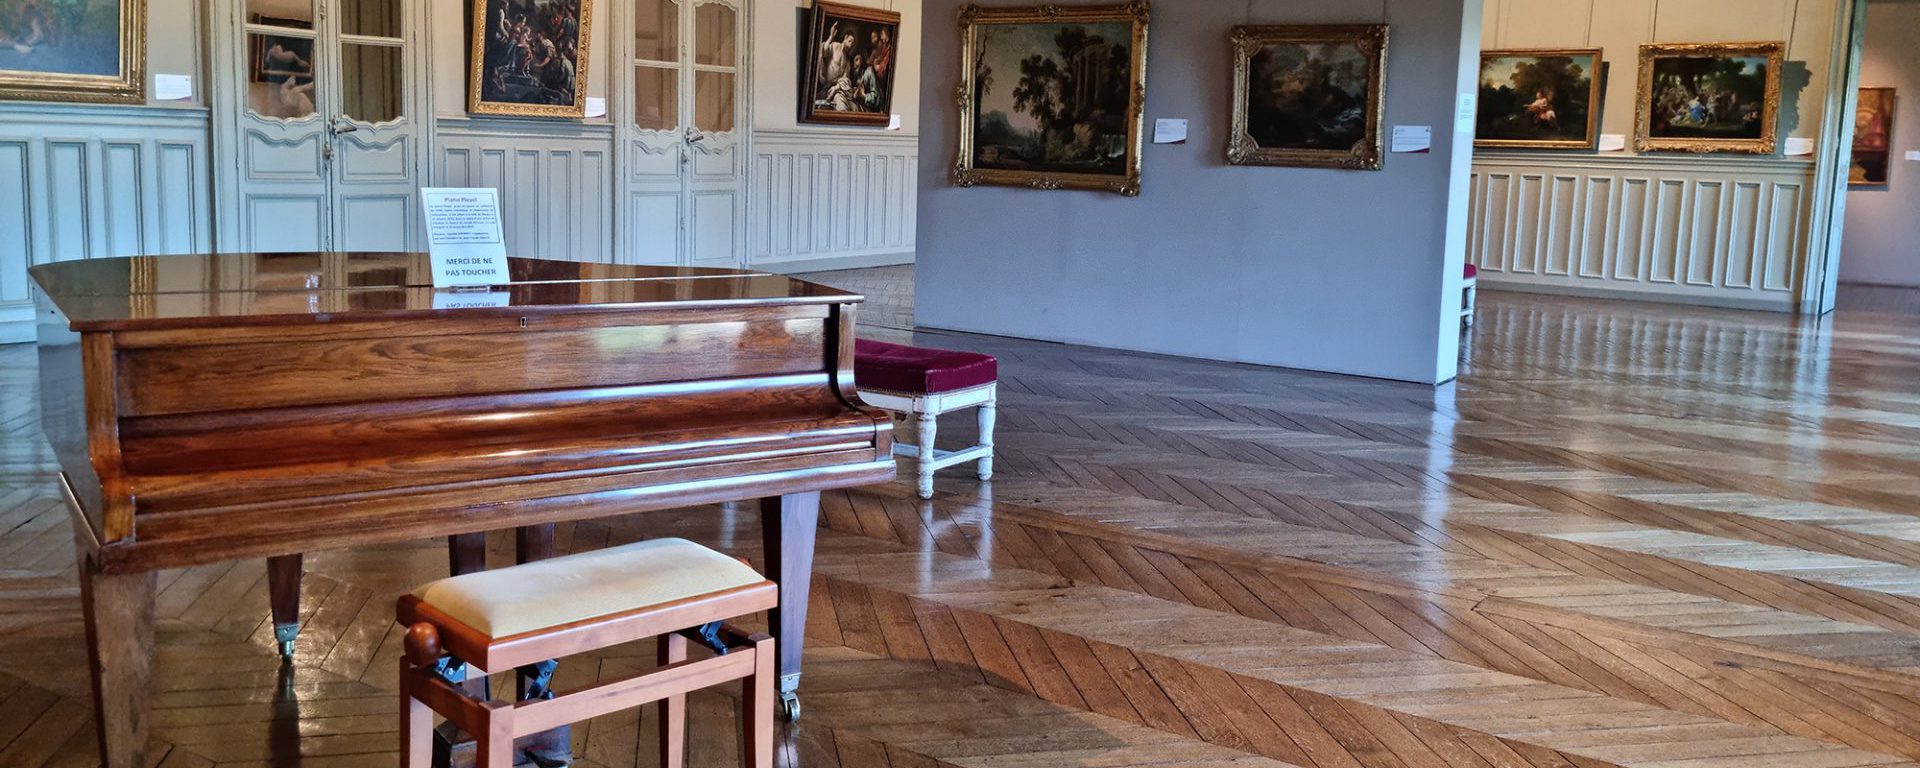 Piano dans Musée Bossuet de Meaux